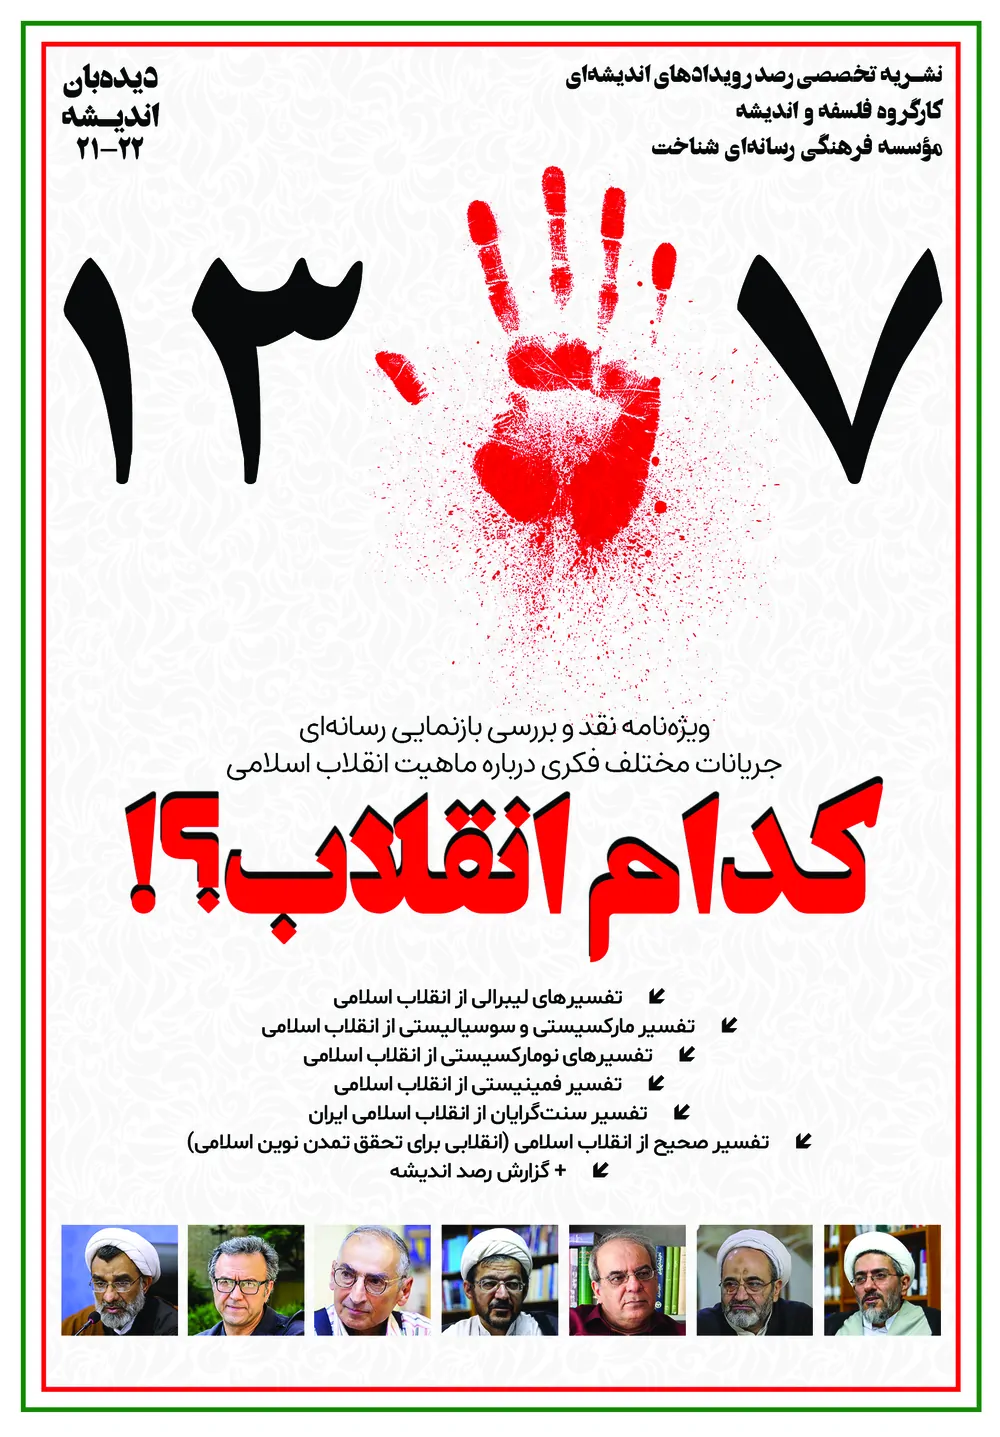 دیده بان اندیشه - شماره ۲۱ و ۲۲ - ویژه نامه انقلاب اسلامی